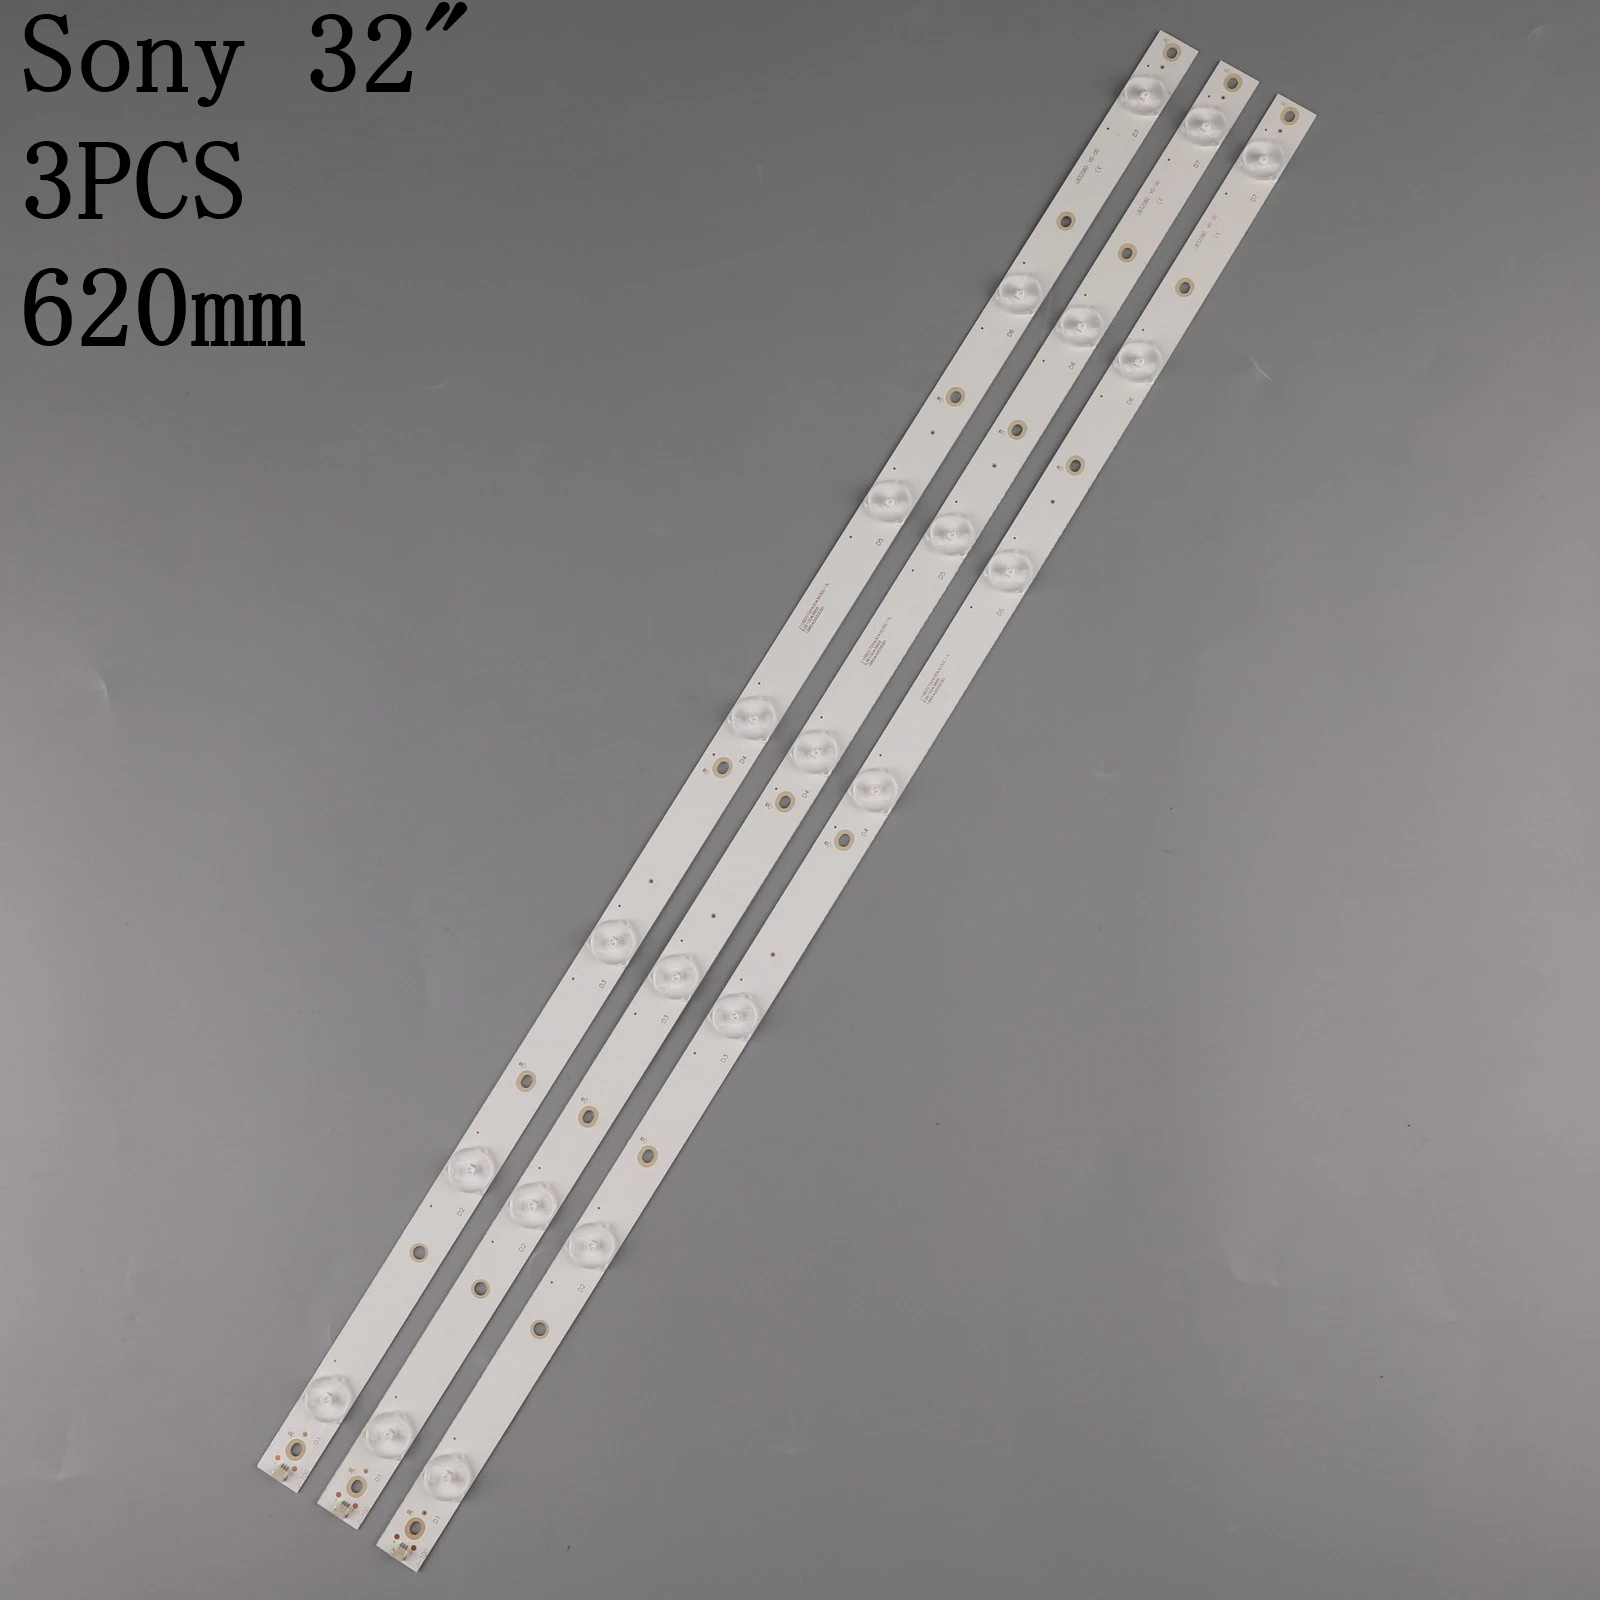 

LED backlight strip for LG 32LJ550B-SA 32LJ500V 32LH500D GJ-2K16 GEMINI-315 32PFS6401 KDL-32R330D 32PHS5301 32PFS5501 LB32080 V0